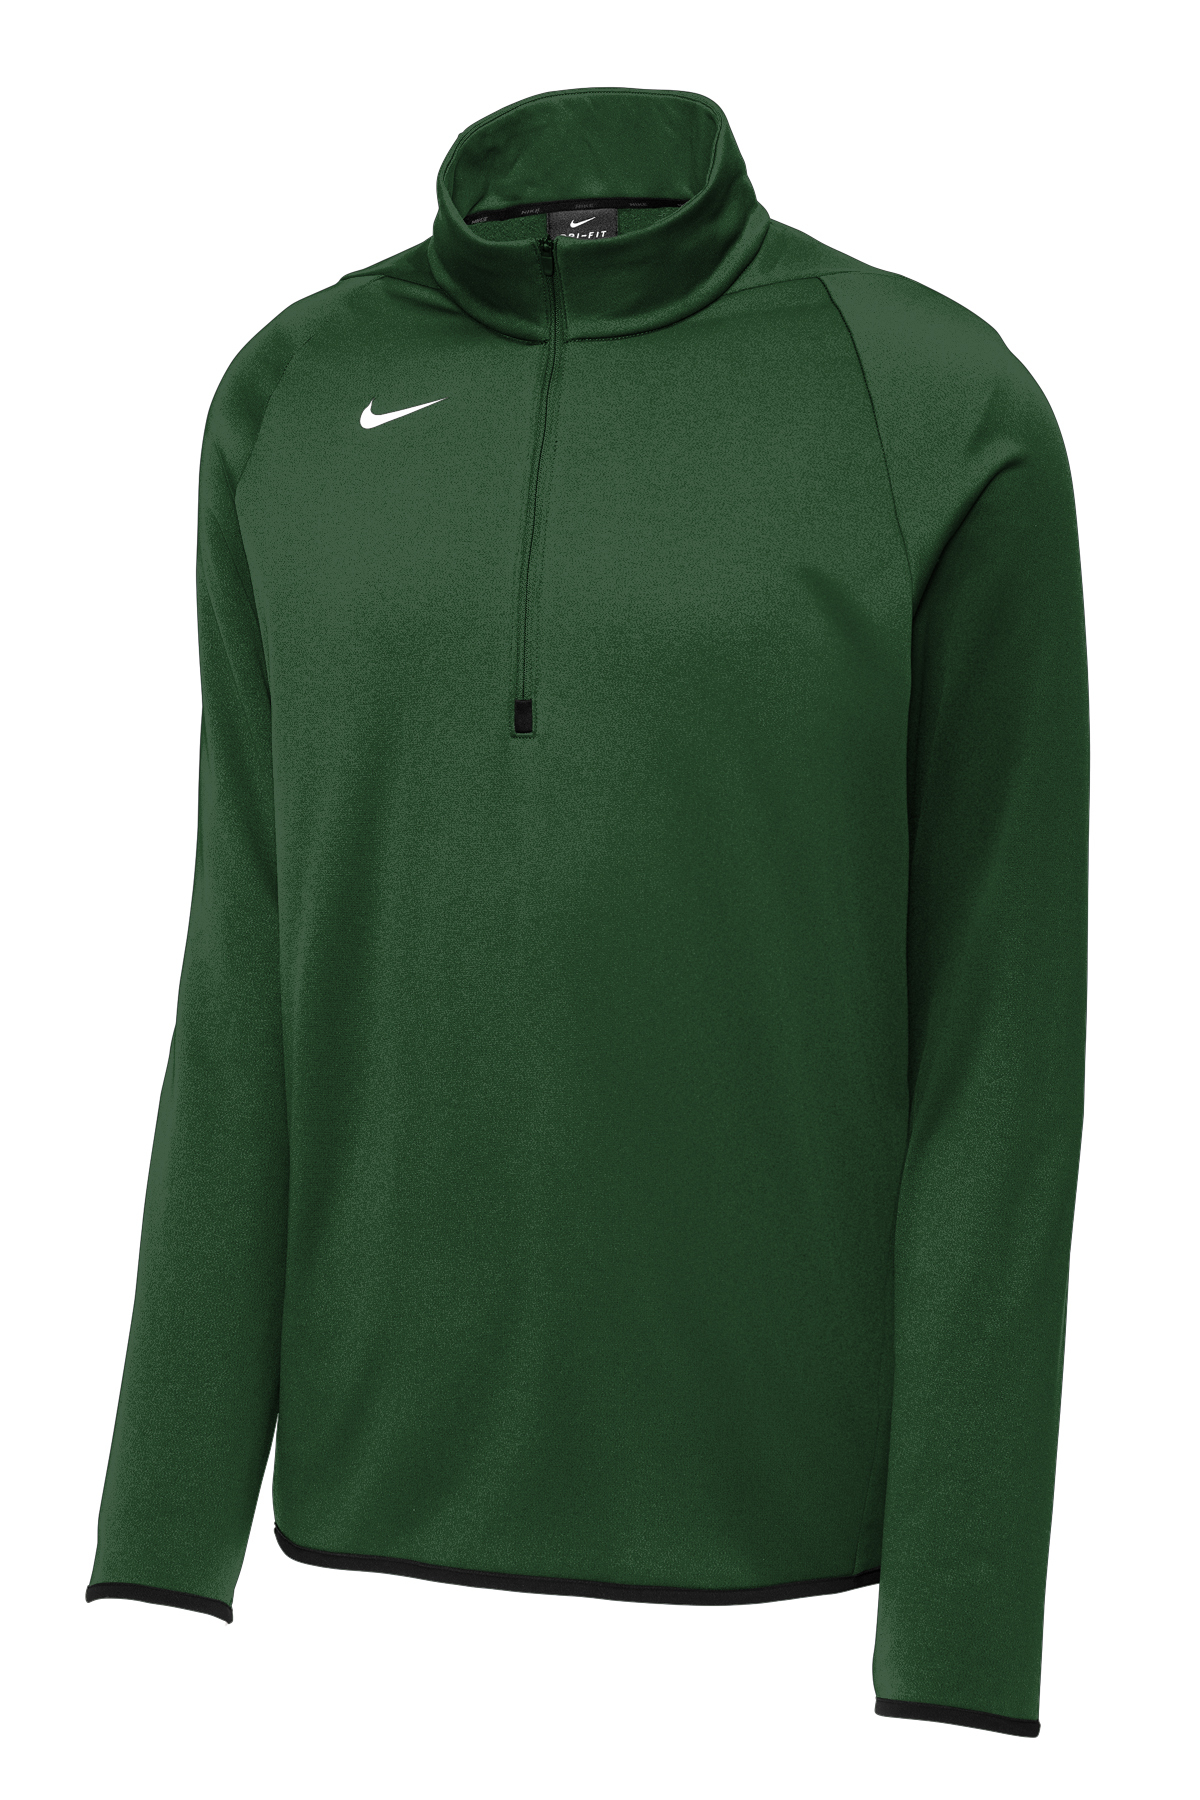 Nike Sportswear 1/4 Zip Fleece Sweatshirt DC0781-010 Women 3X Men